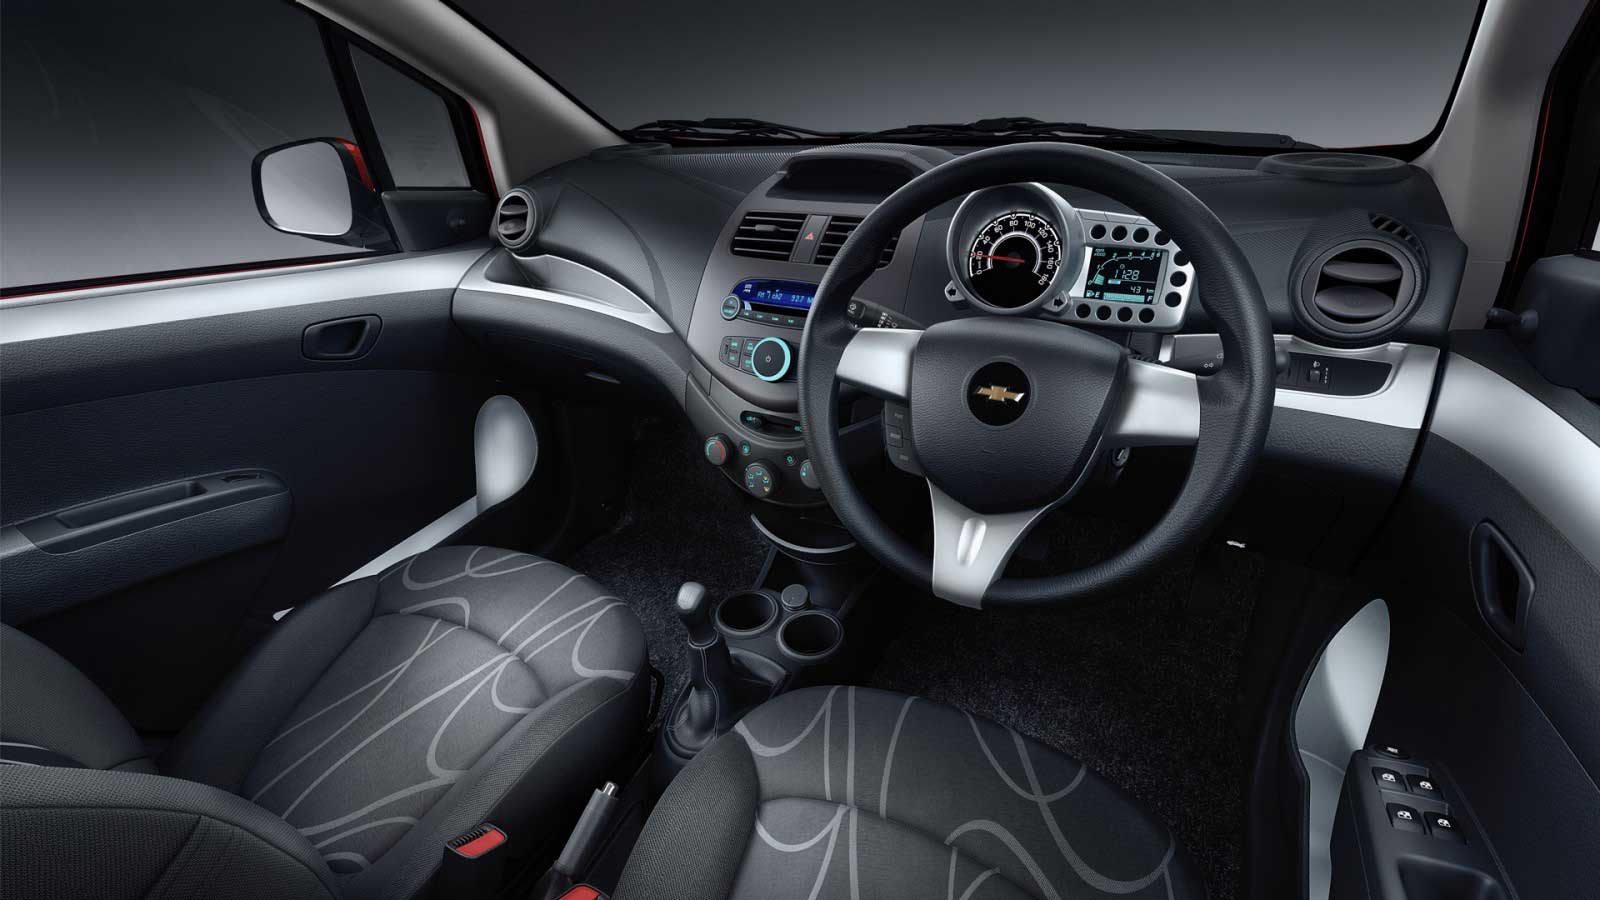 Chevrolet Beat LT Diesel Interior front view